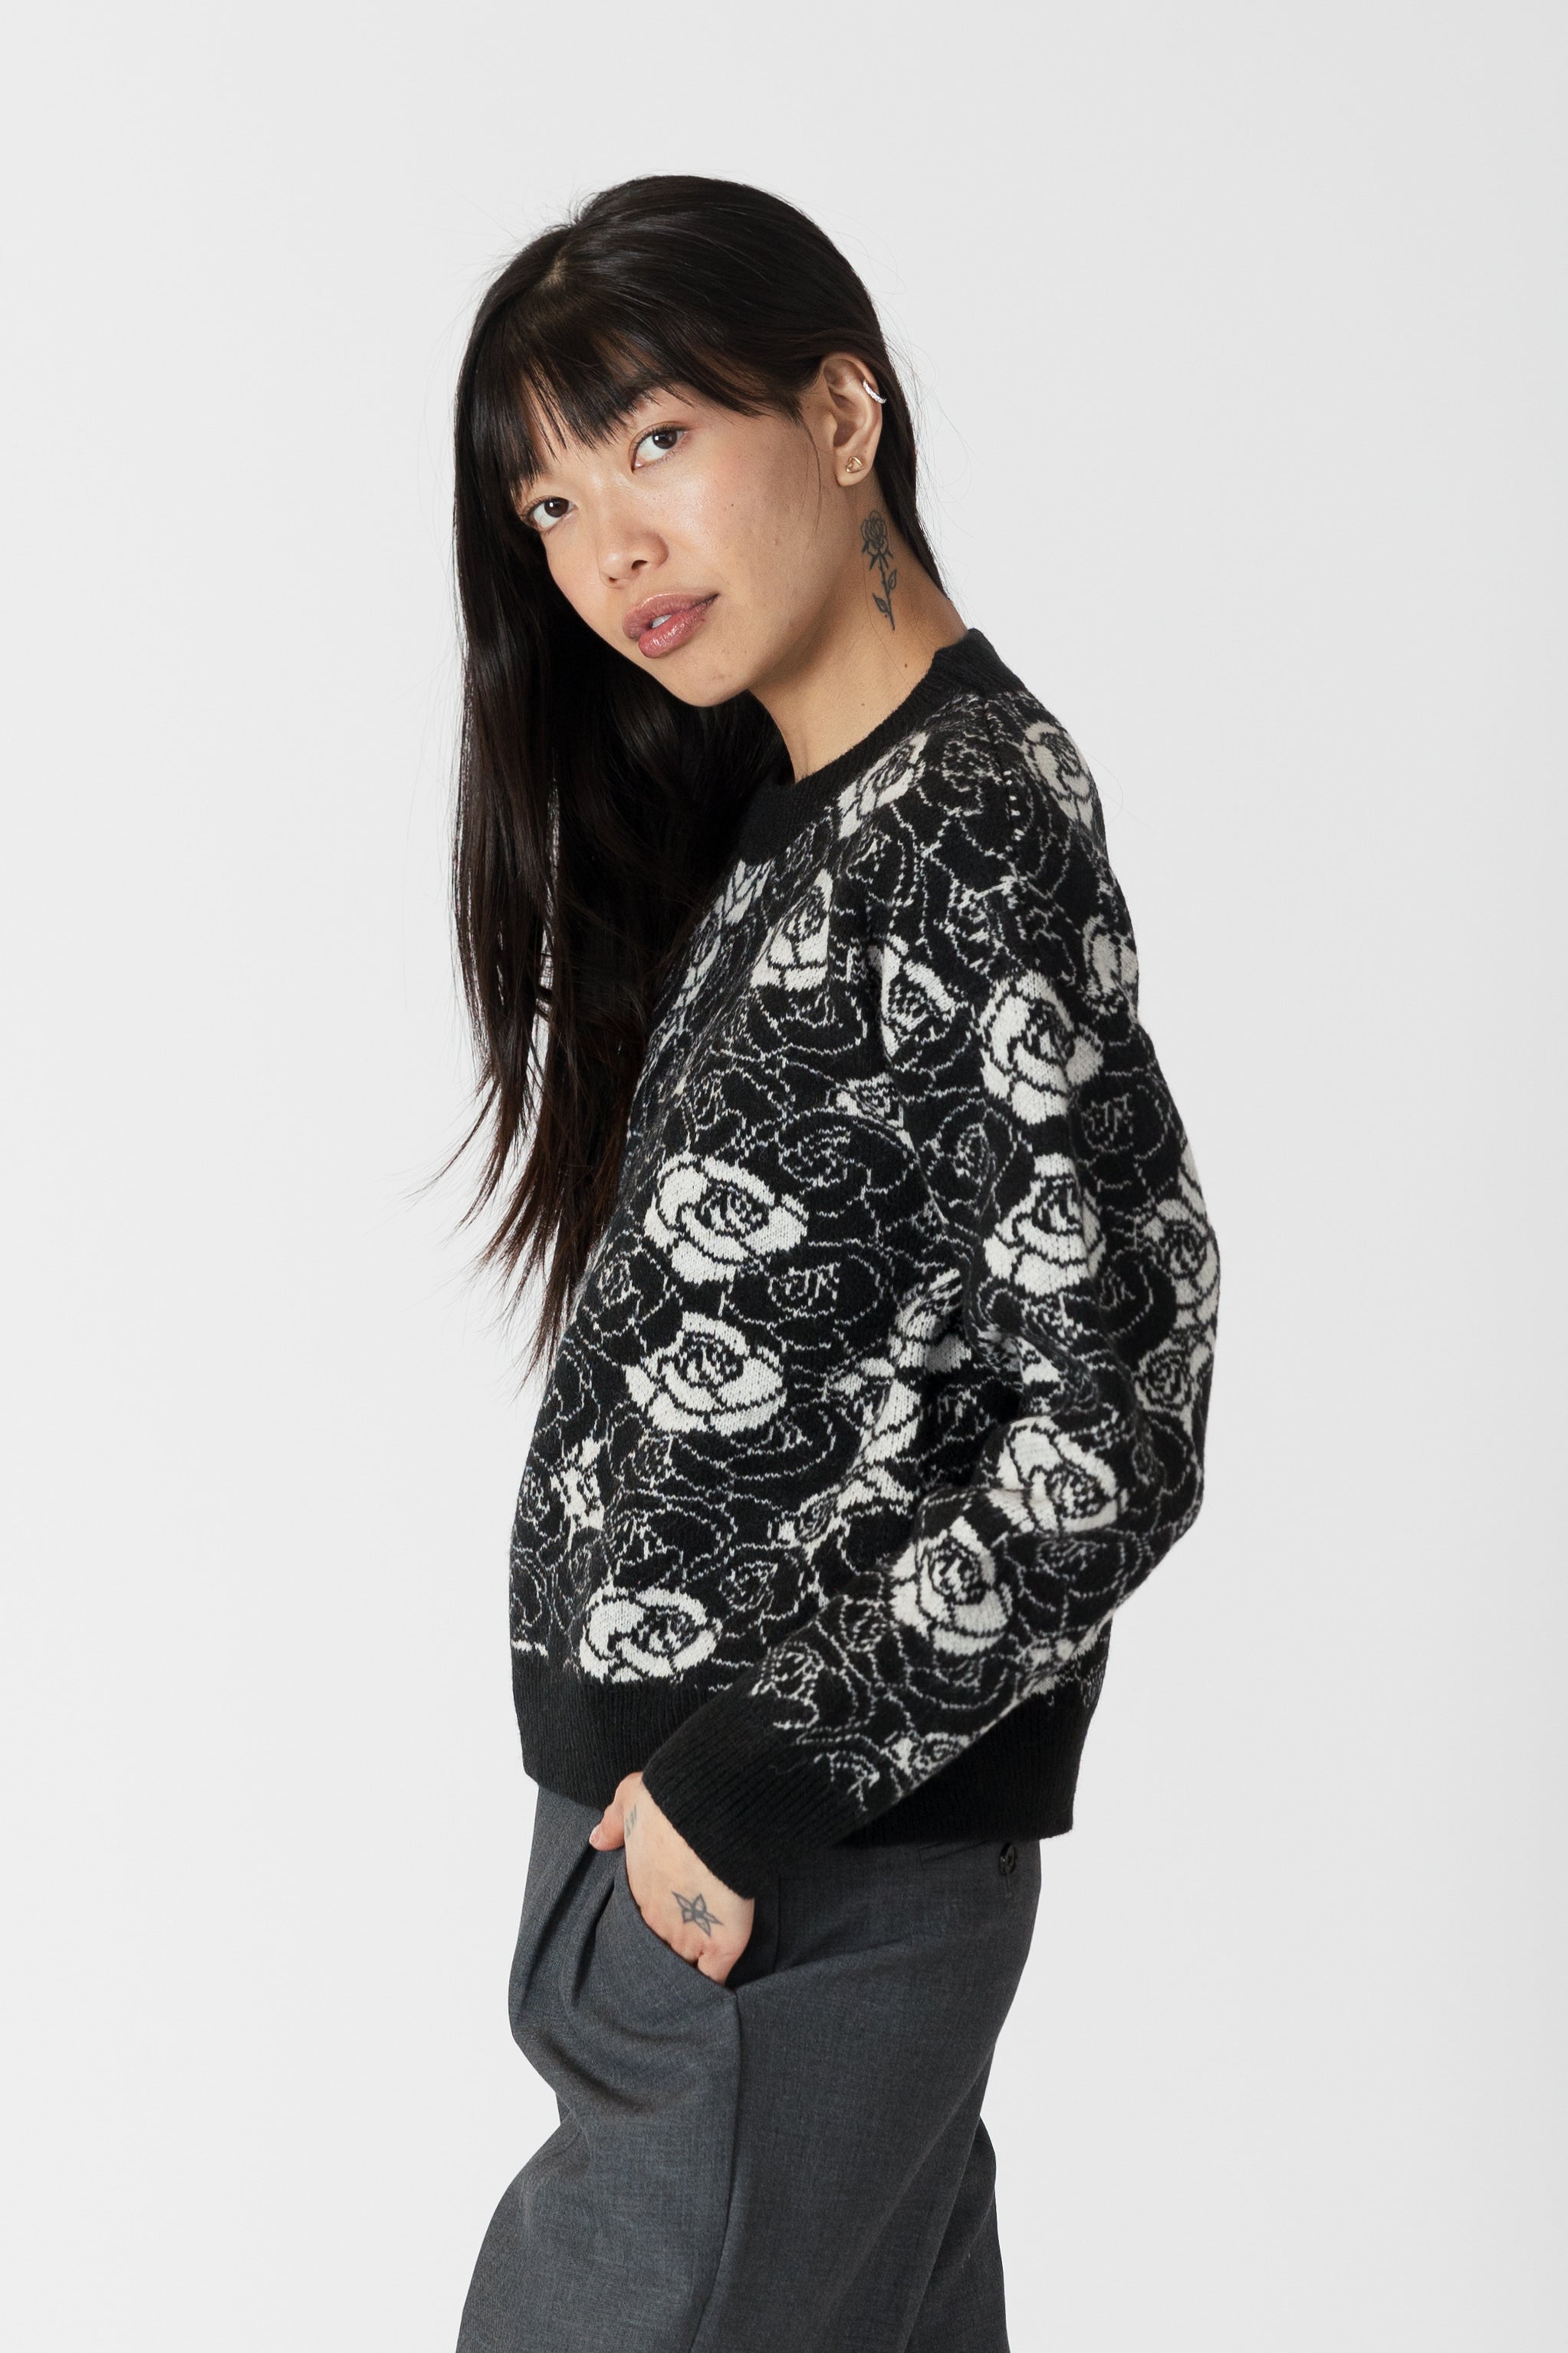 model wearing jordyn rose print crew neck sweater from lyla & luxe, side view